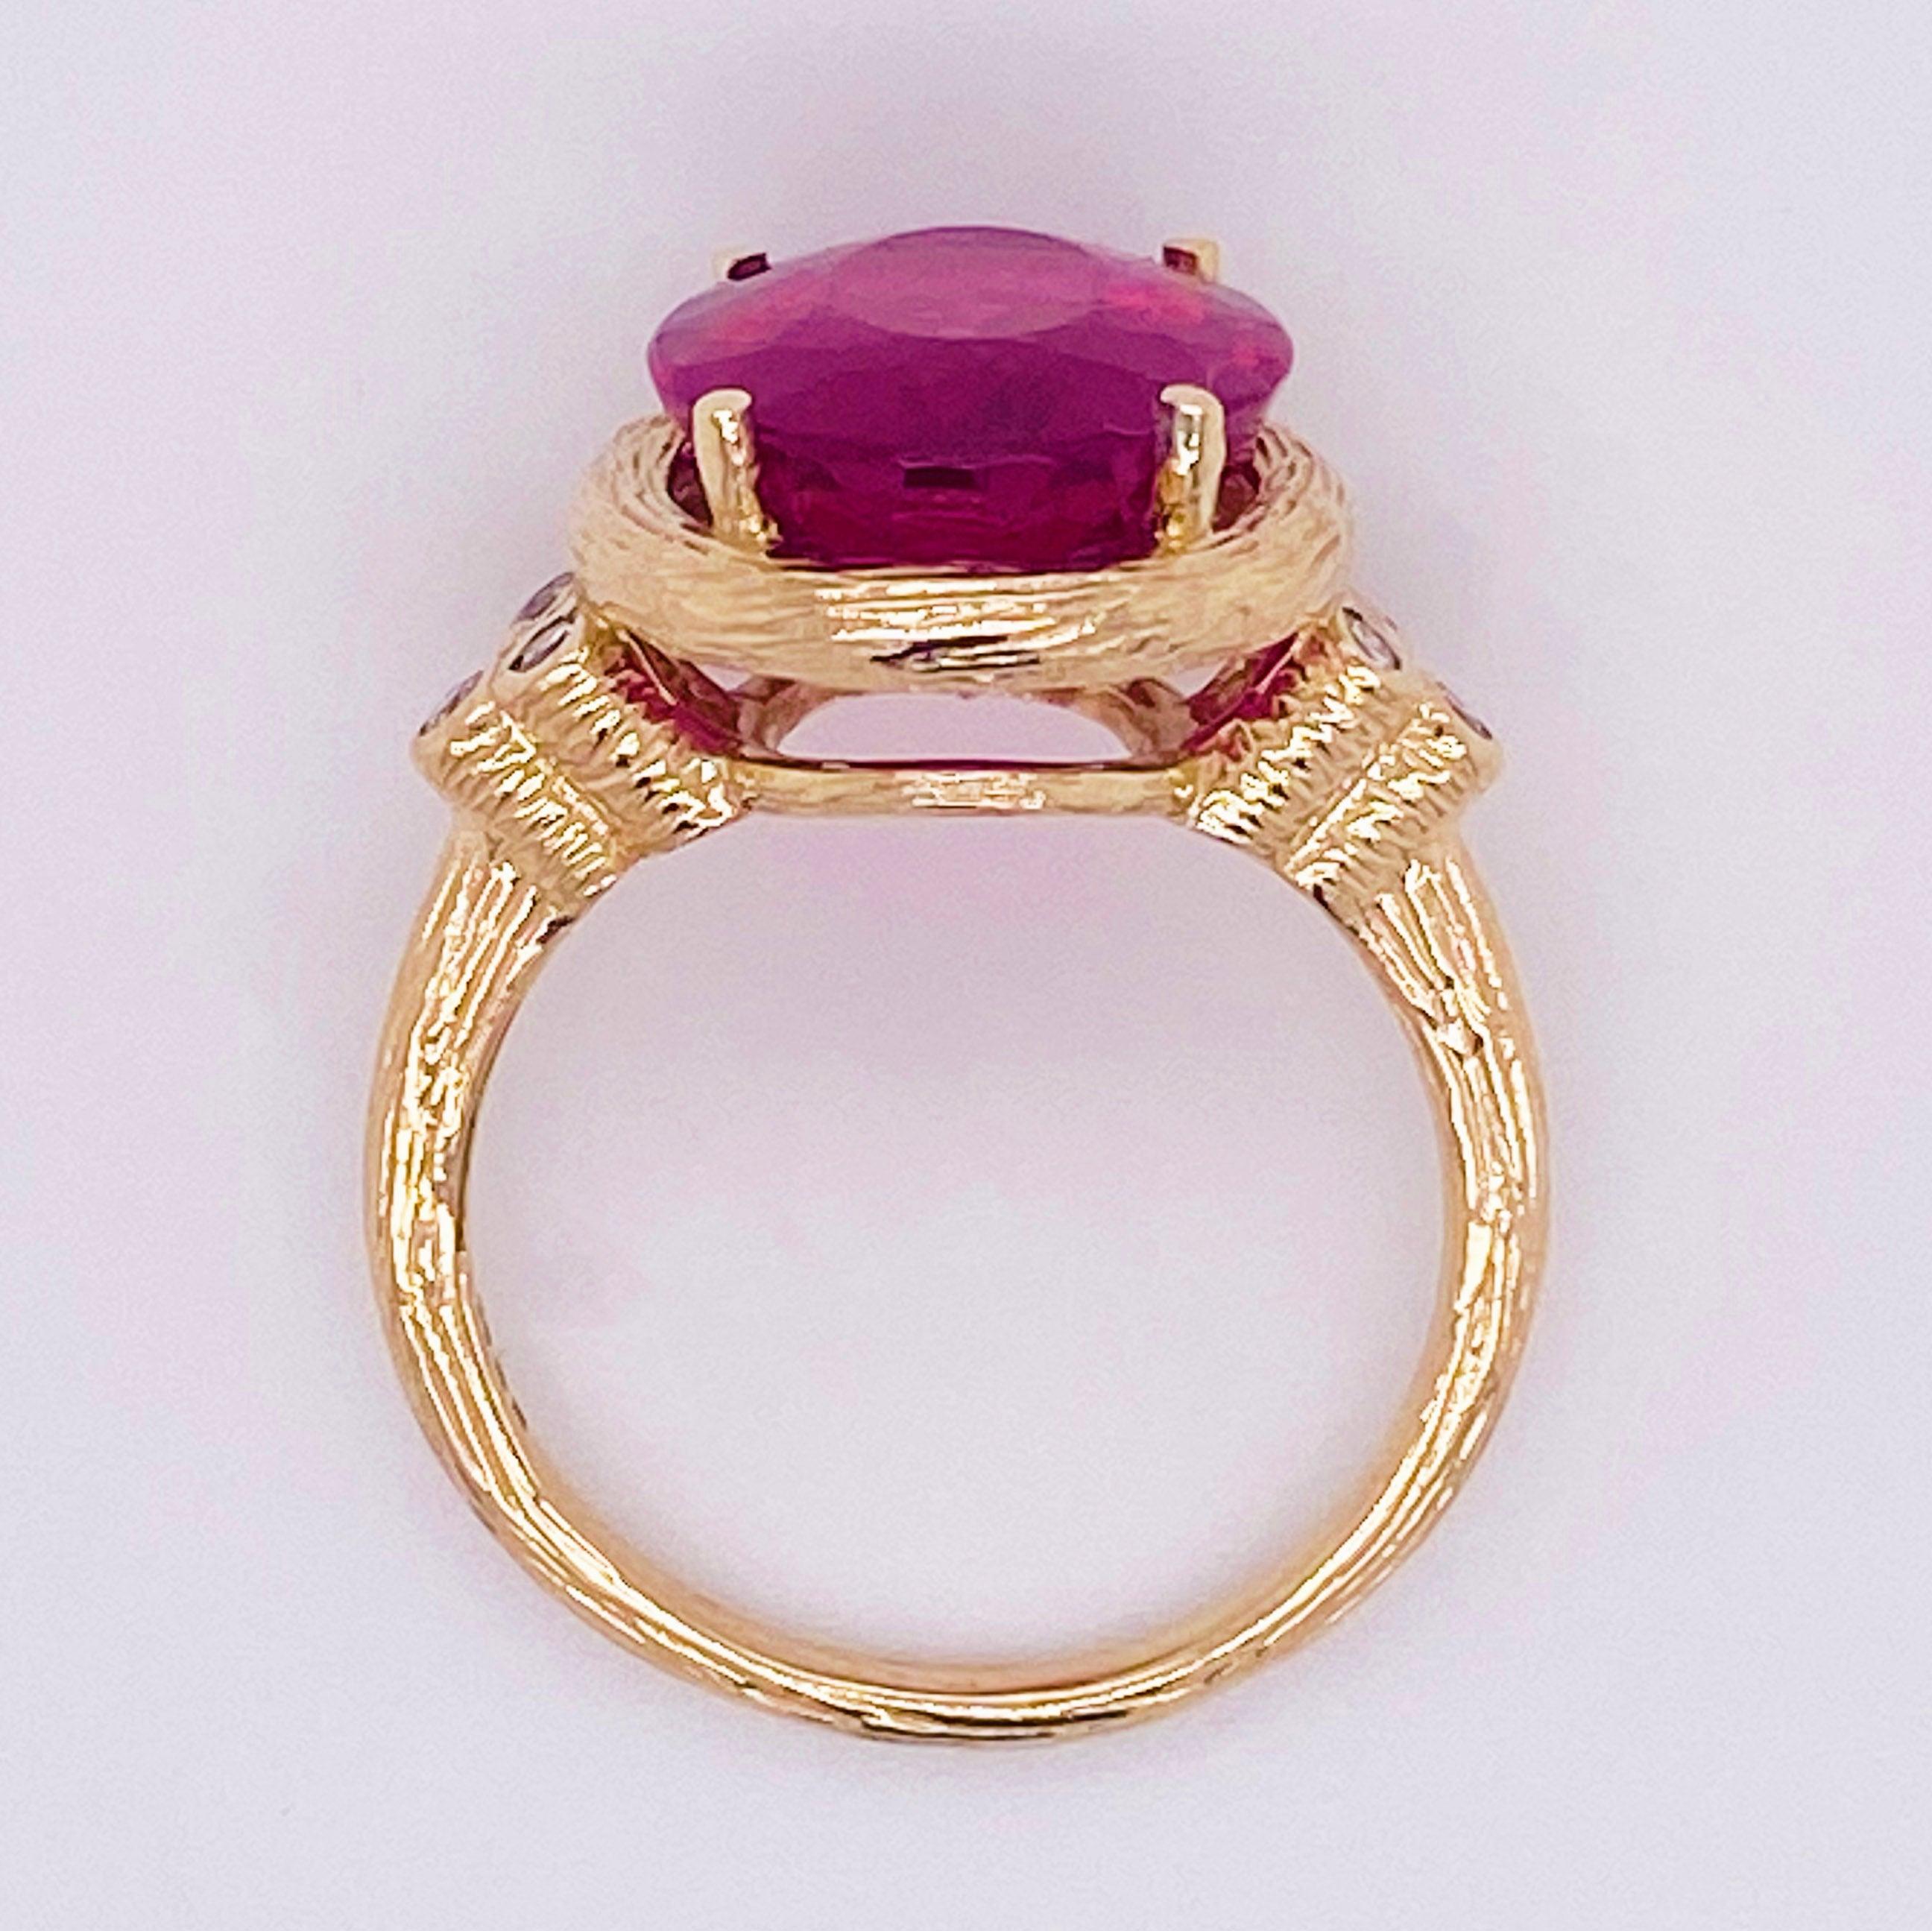 Tourmaline Diamond Ring, 14 Karat Yellow Gold, Pink, Rubellite, Statement 5